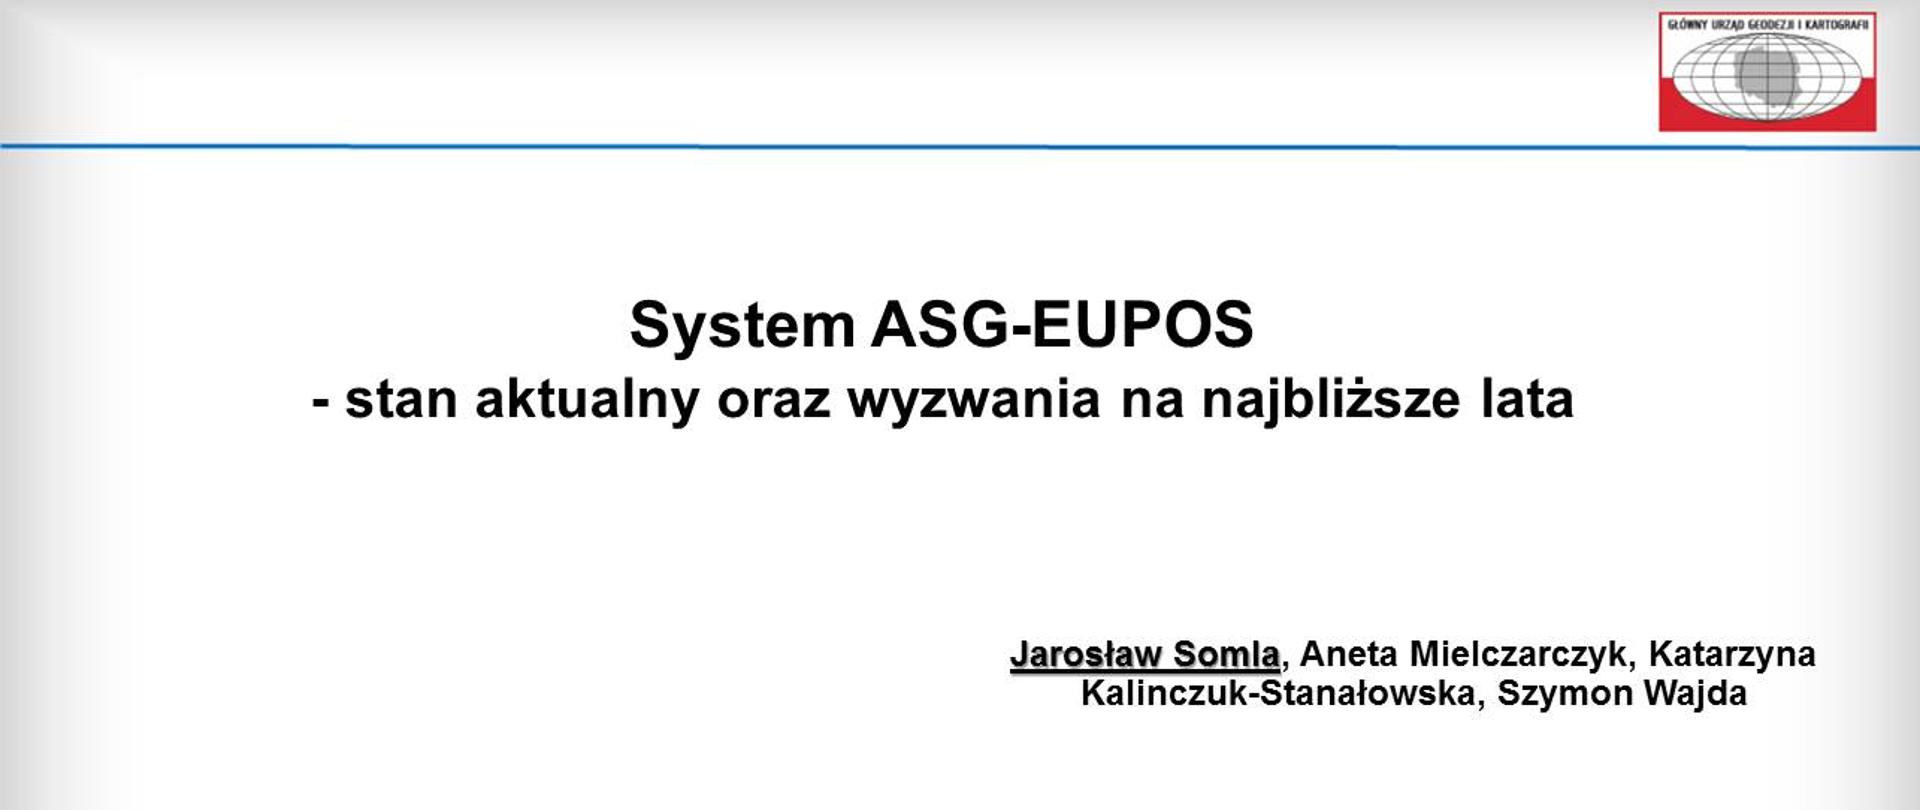 Ilustracja przedstawia slajd tytułowy z prezentacji nt. systemu ASG-EUPOS.